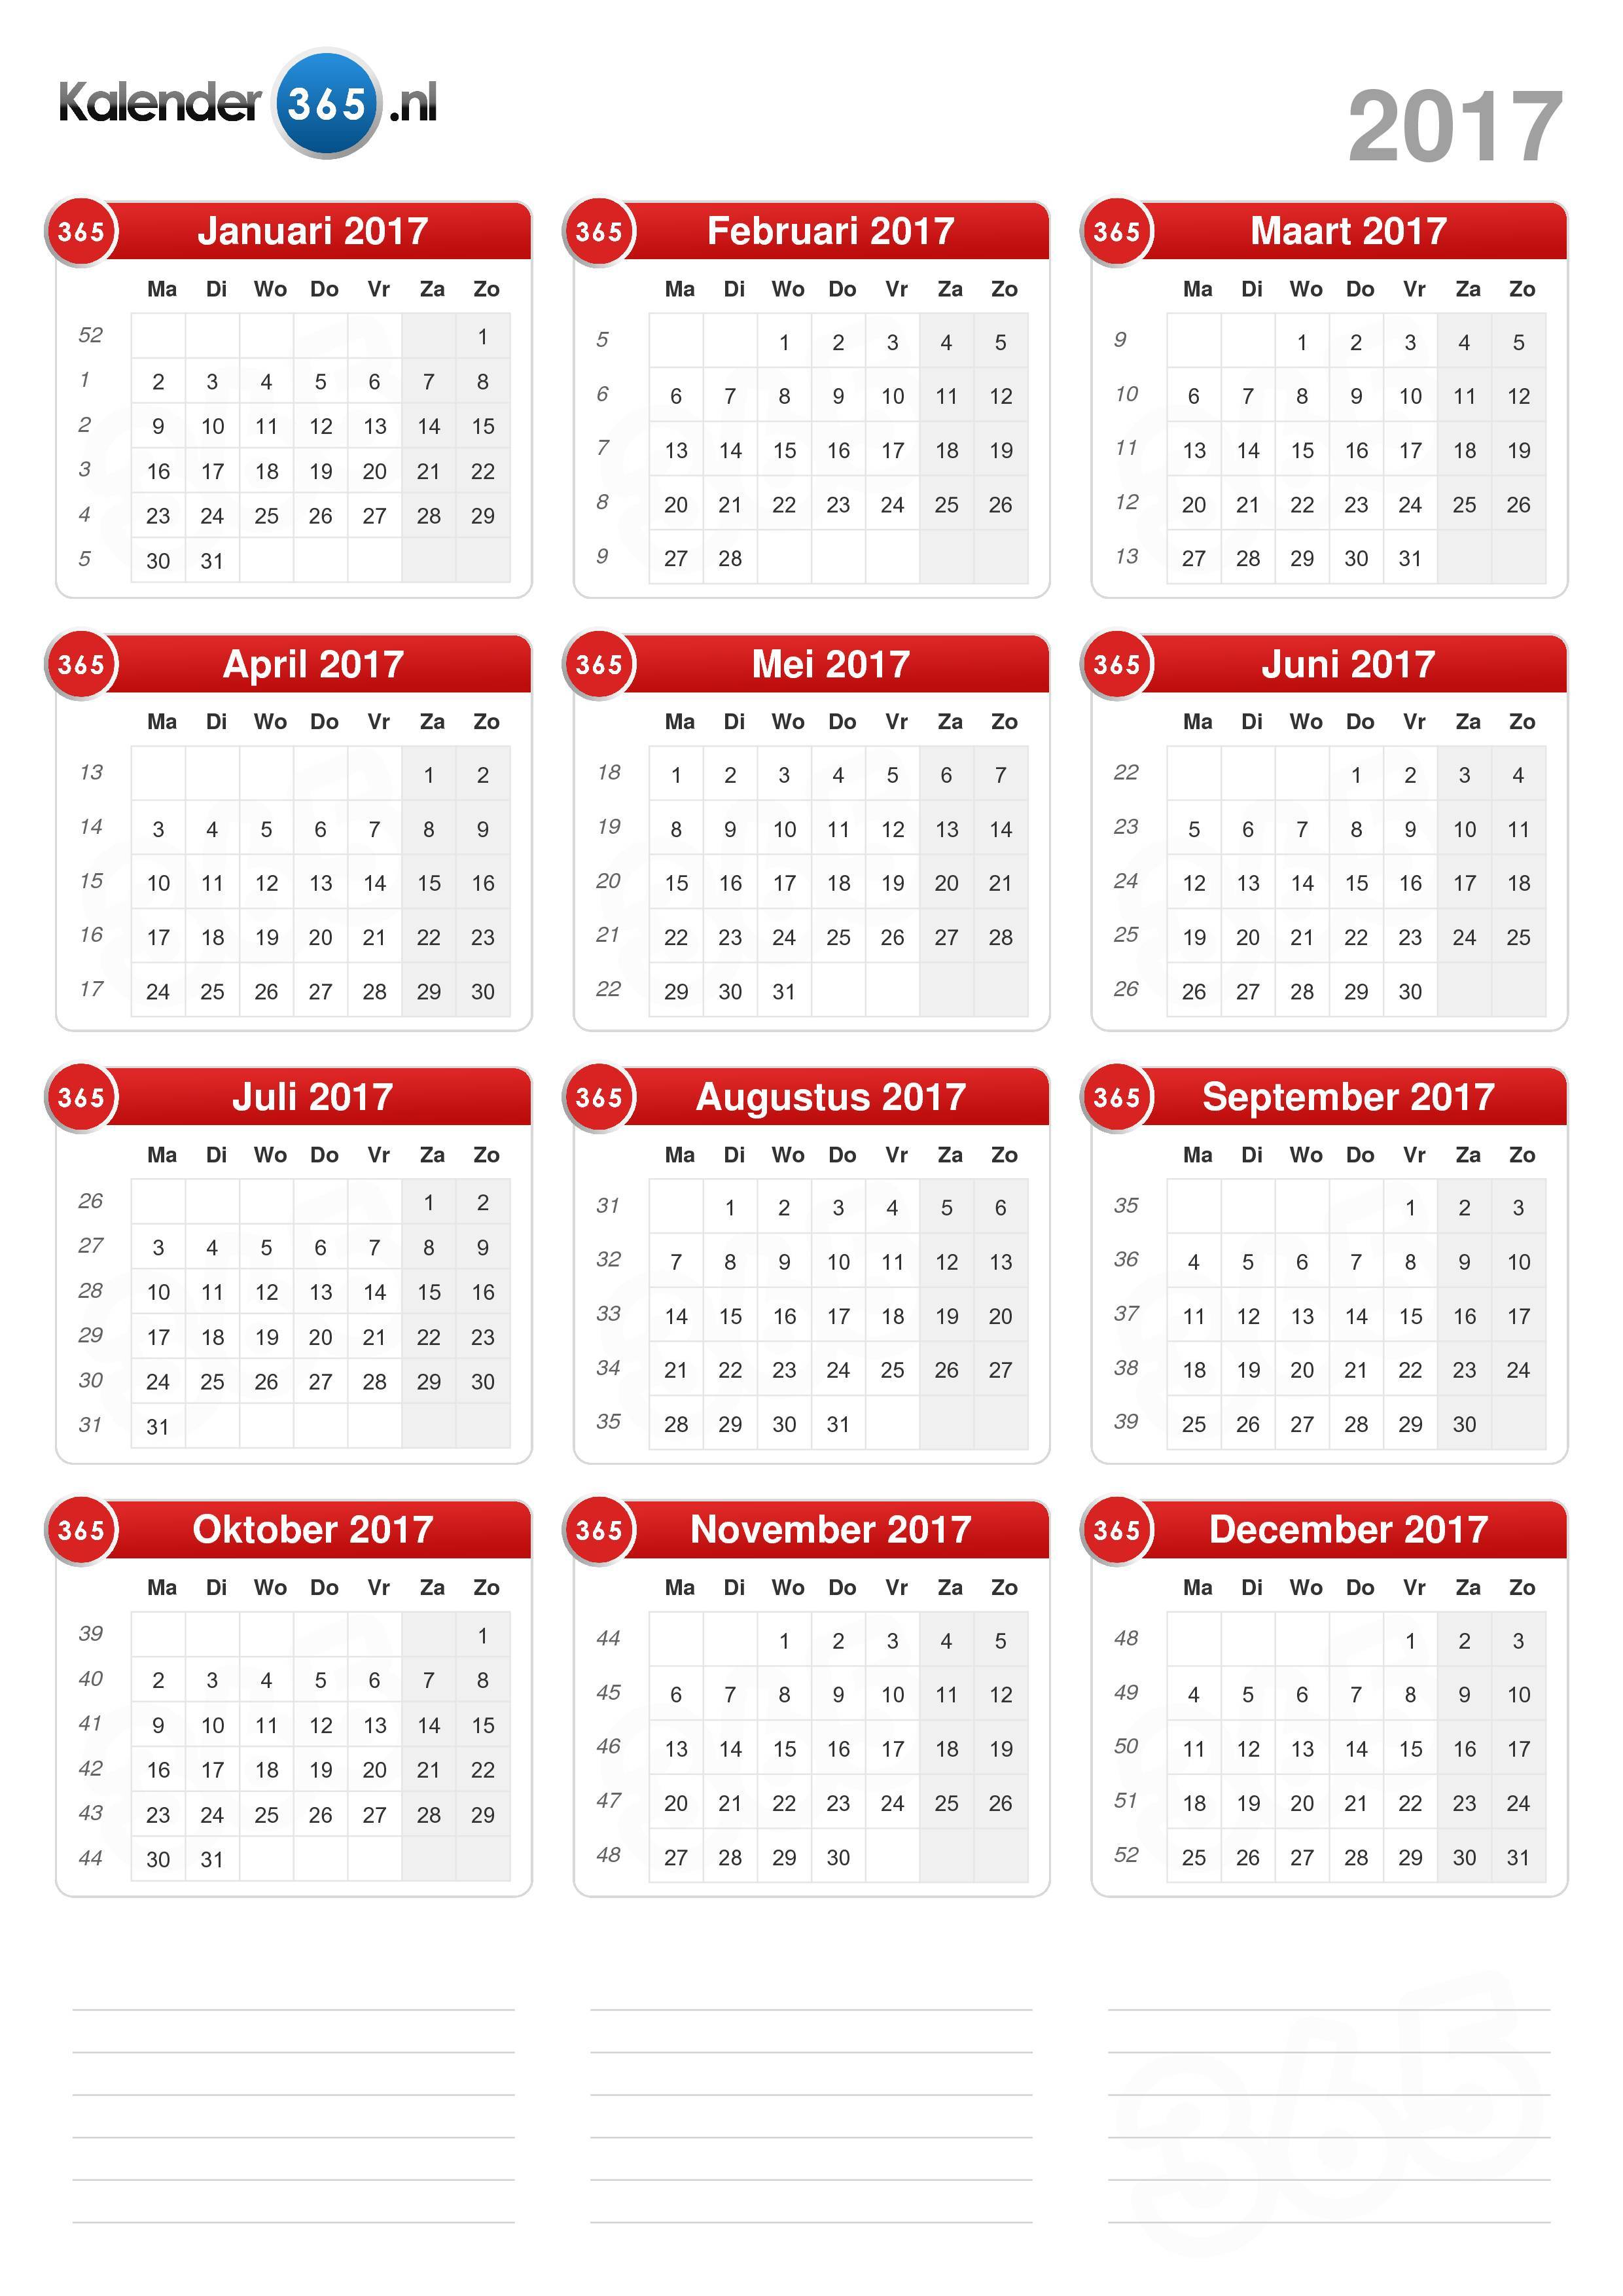 Hoop van Albany pensioen Kalender 2017